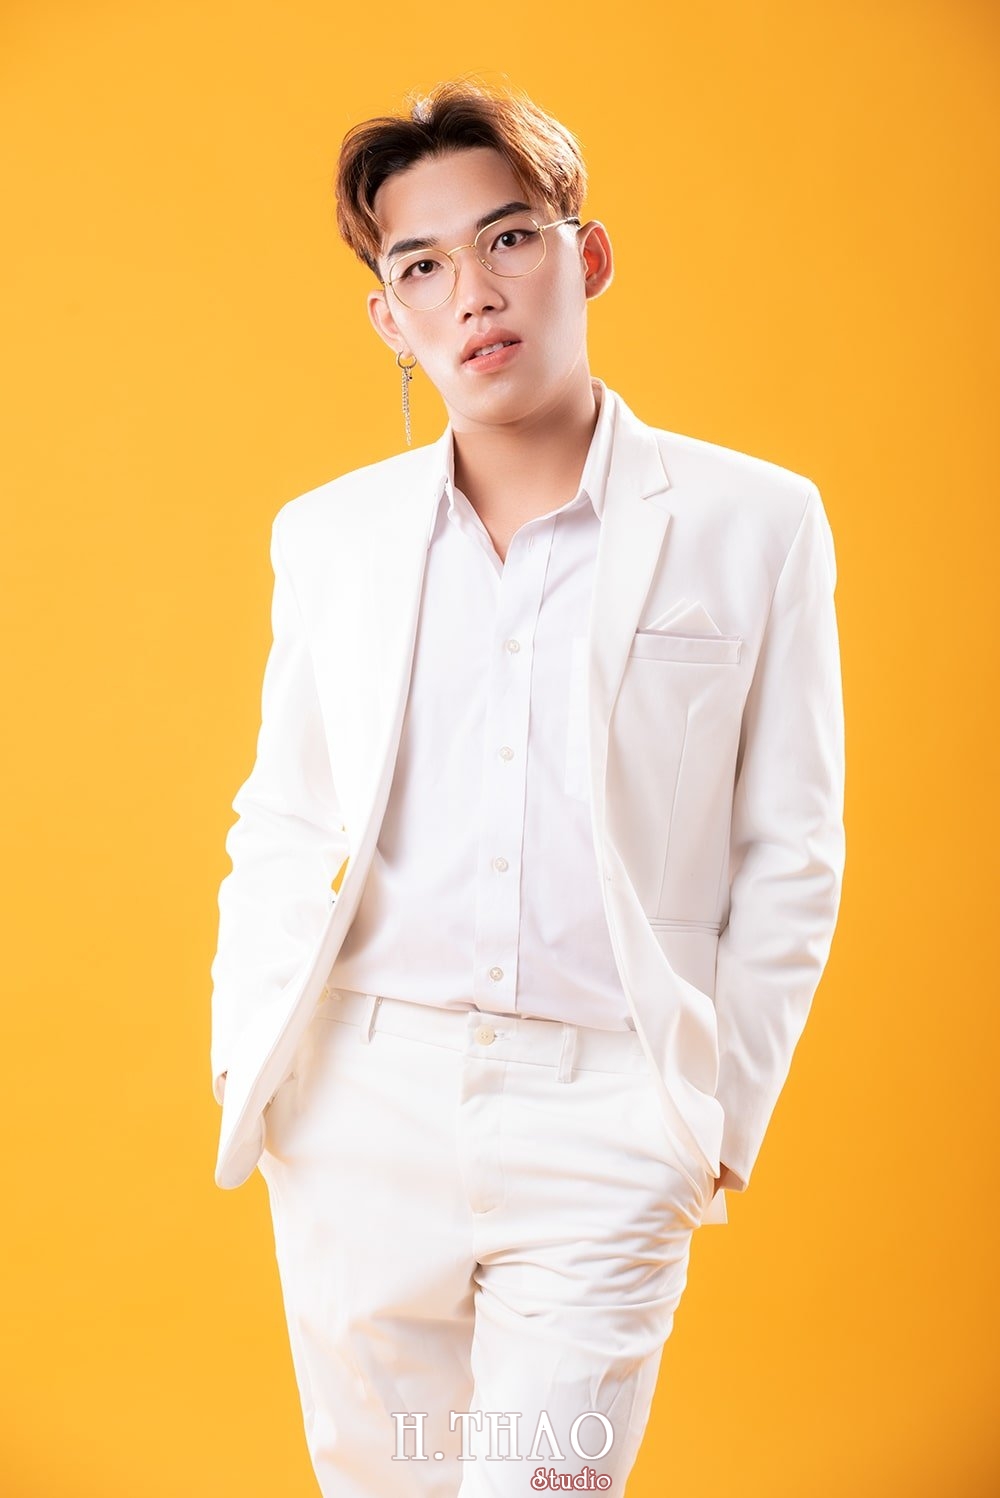 Anh profile 2 4 - Album tổng hợp ảnh doanh nhân trẻ đẹp Tháng 10- HThao Studio